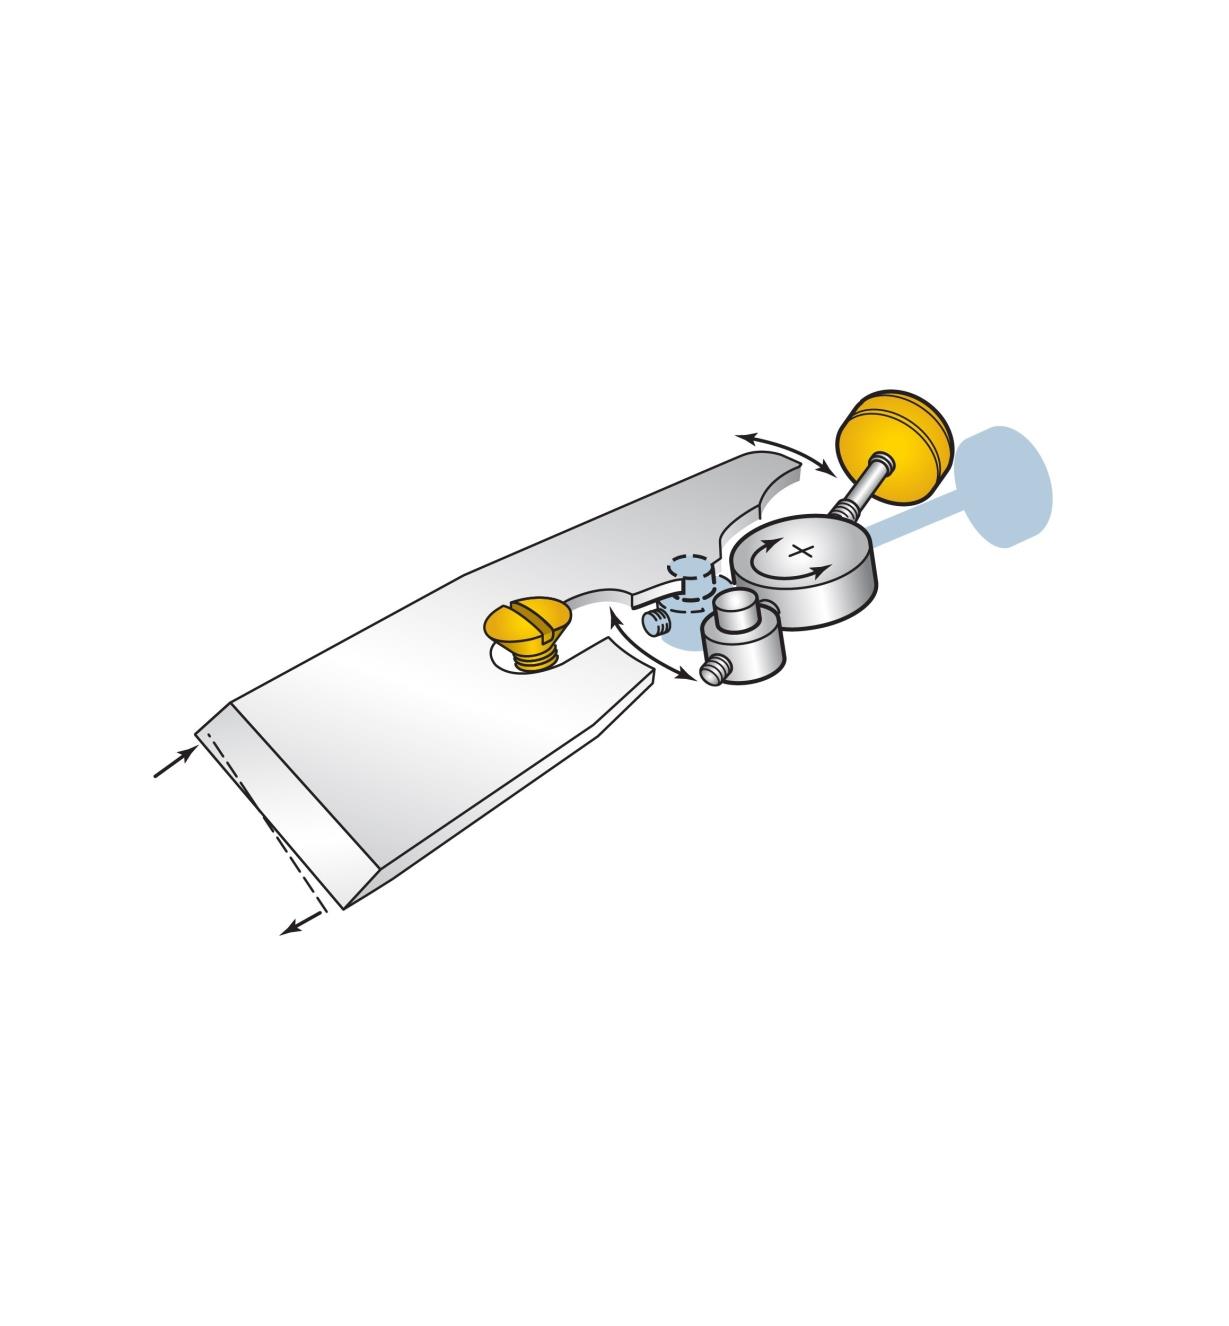 Illustration montrant comment régler le parallélisme du tranchant en faisant osciller l'arrière de la lame du rabot de coupe standard Veritas